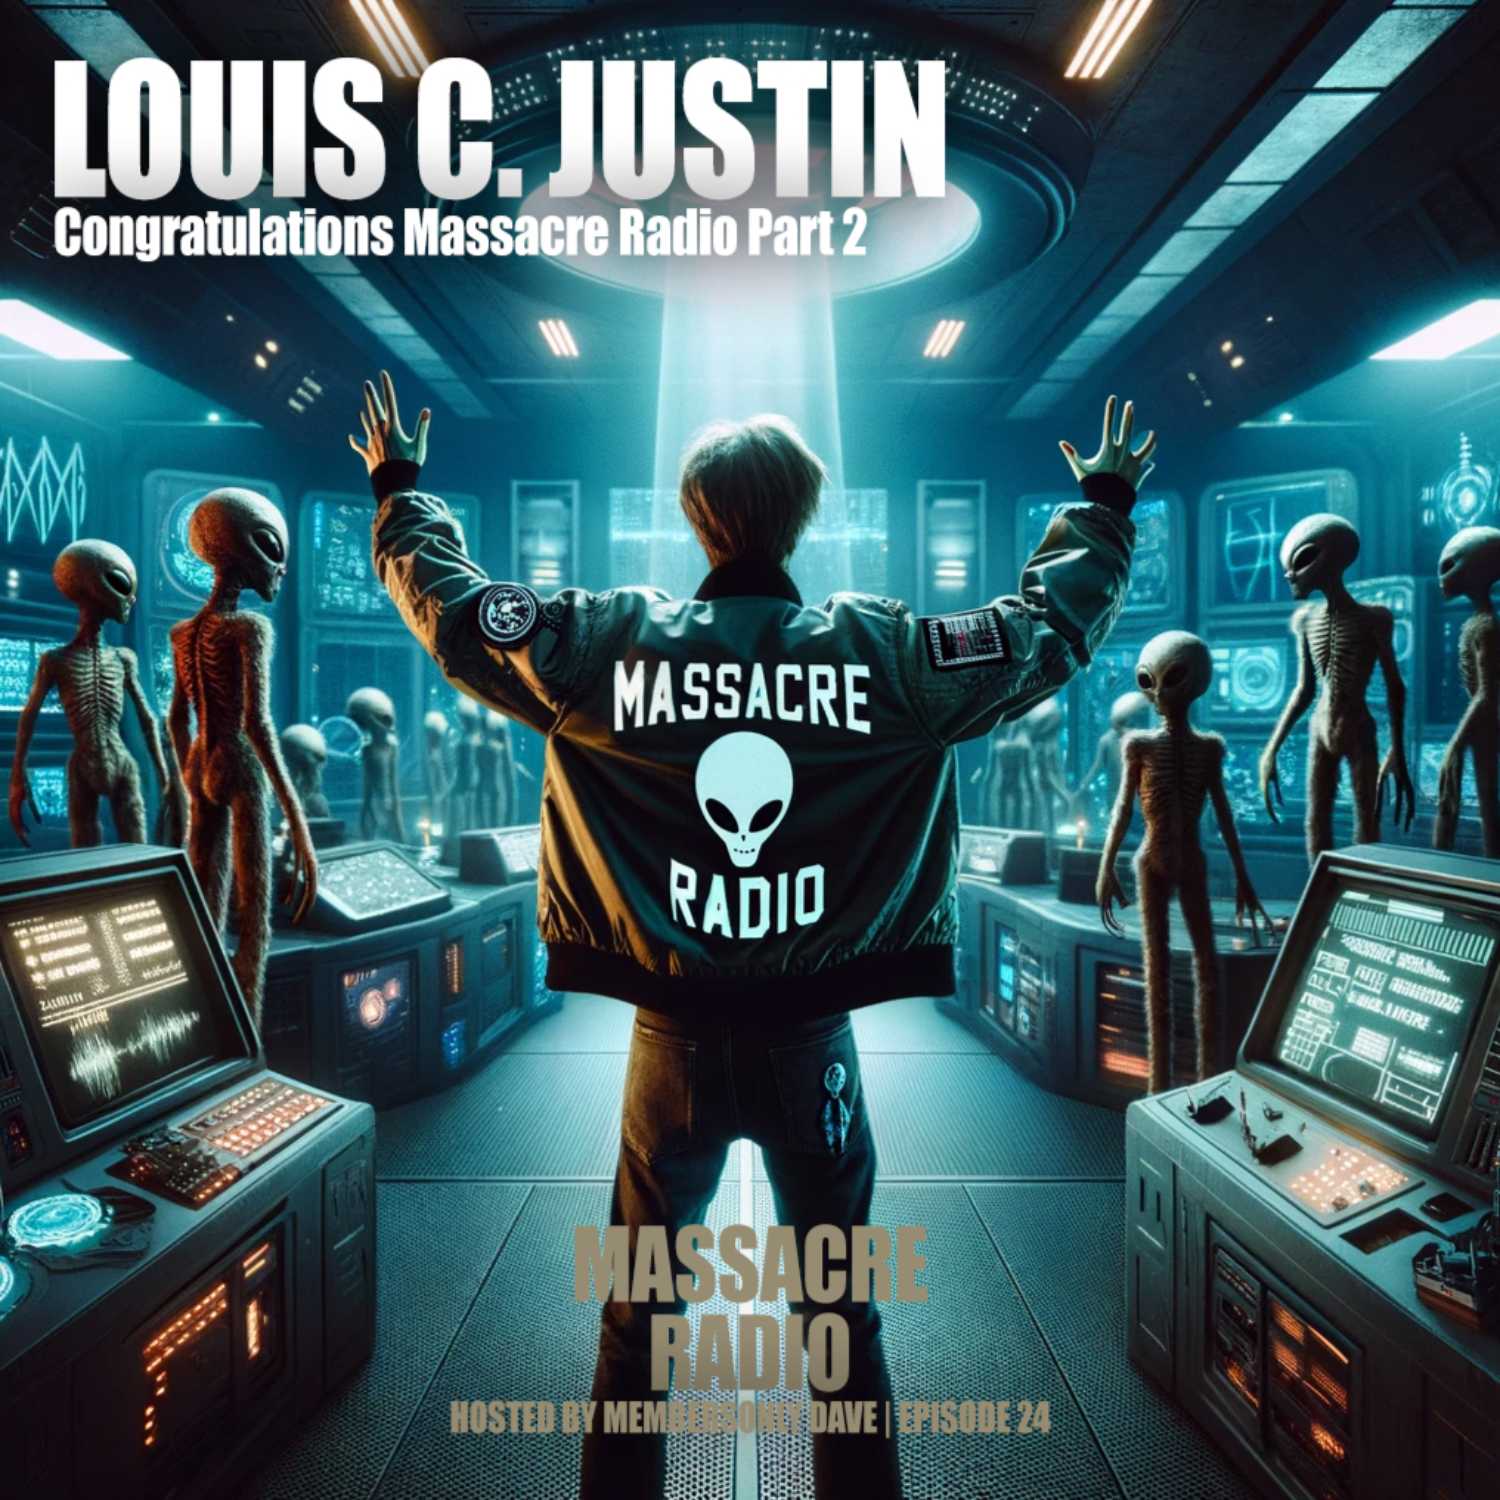 Louis C. Justin - Congratulations Massacre Radio Part 2 Ep. 24